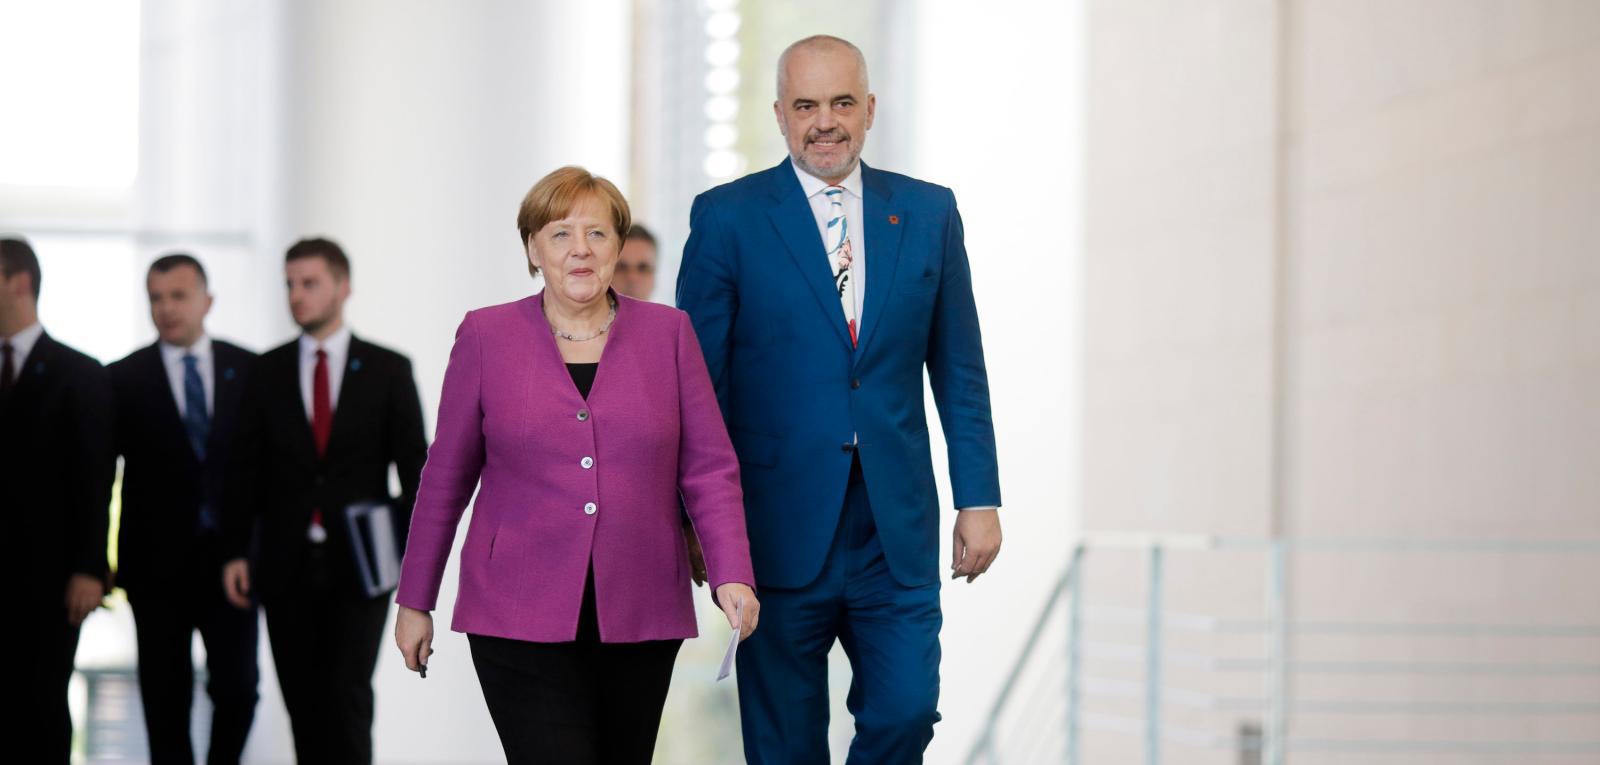 Rama të falenderojë Merkelin që hapi 300 mijë vende pune për shqiptarët në Gjermani